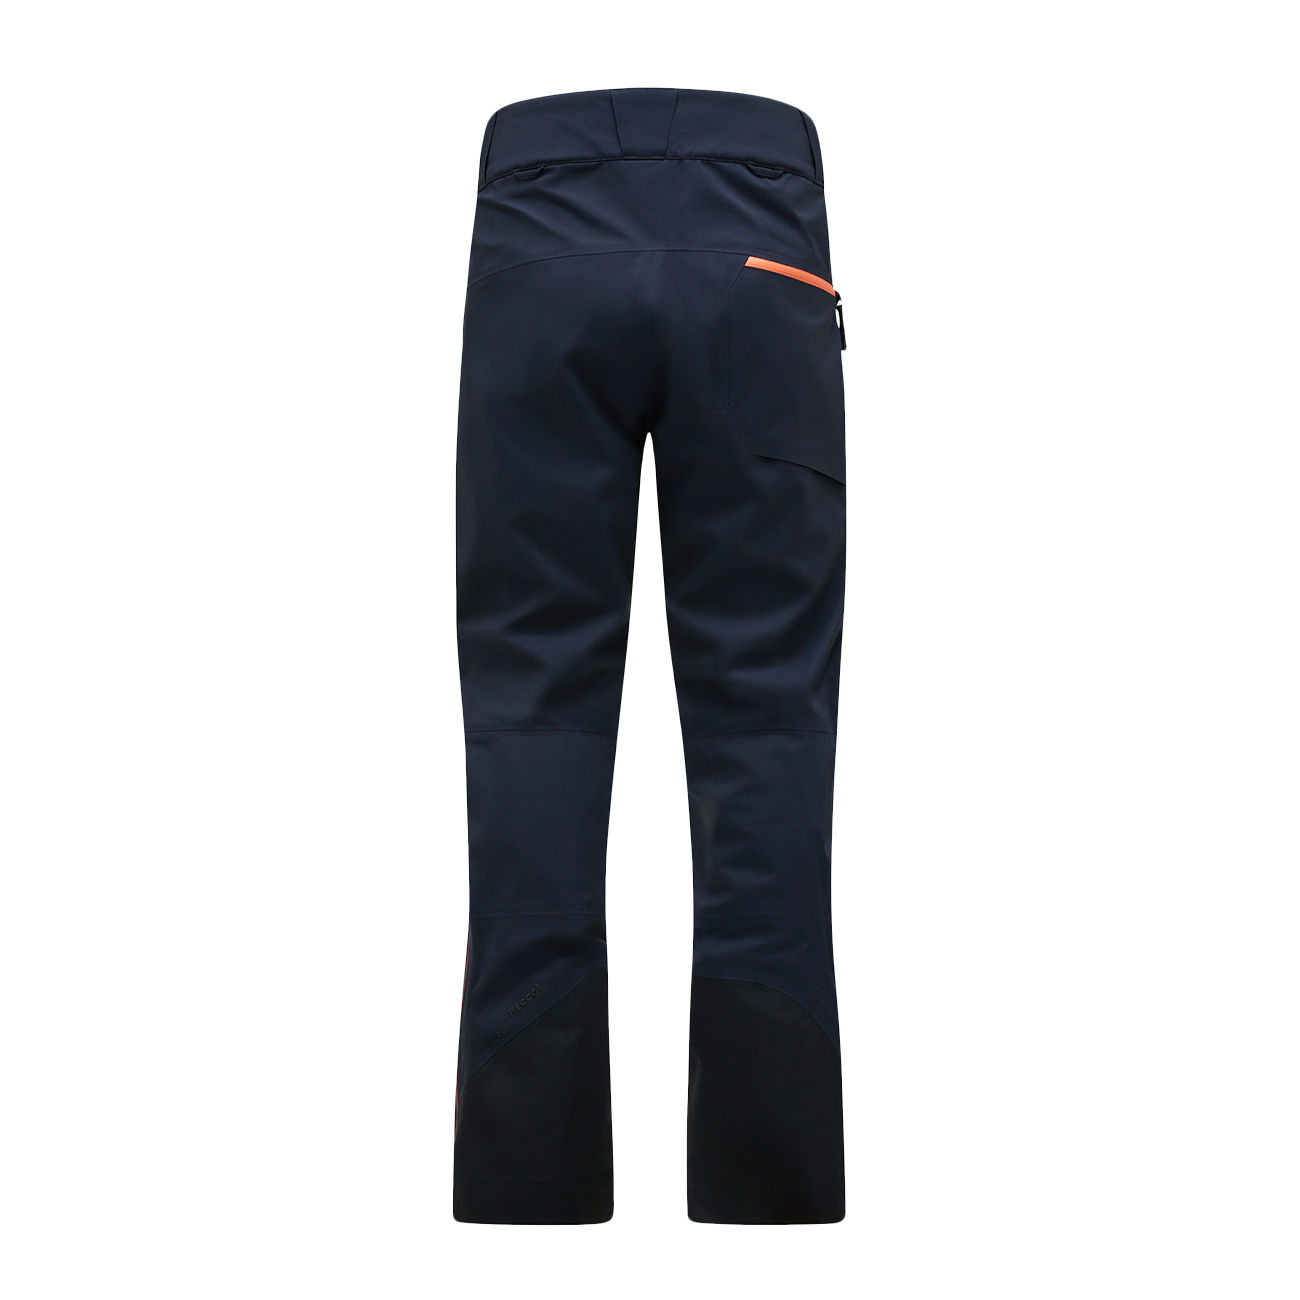 Alpine Gore-Tex® 3L women's pants - Salute blue – D-STRUCTURE